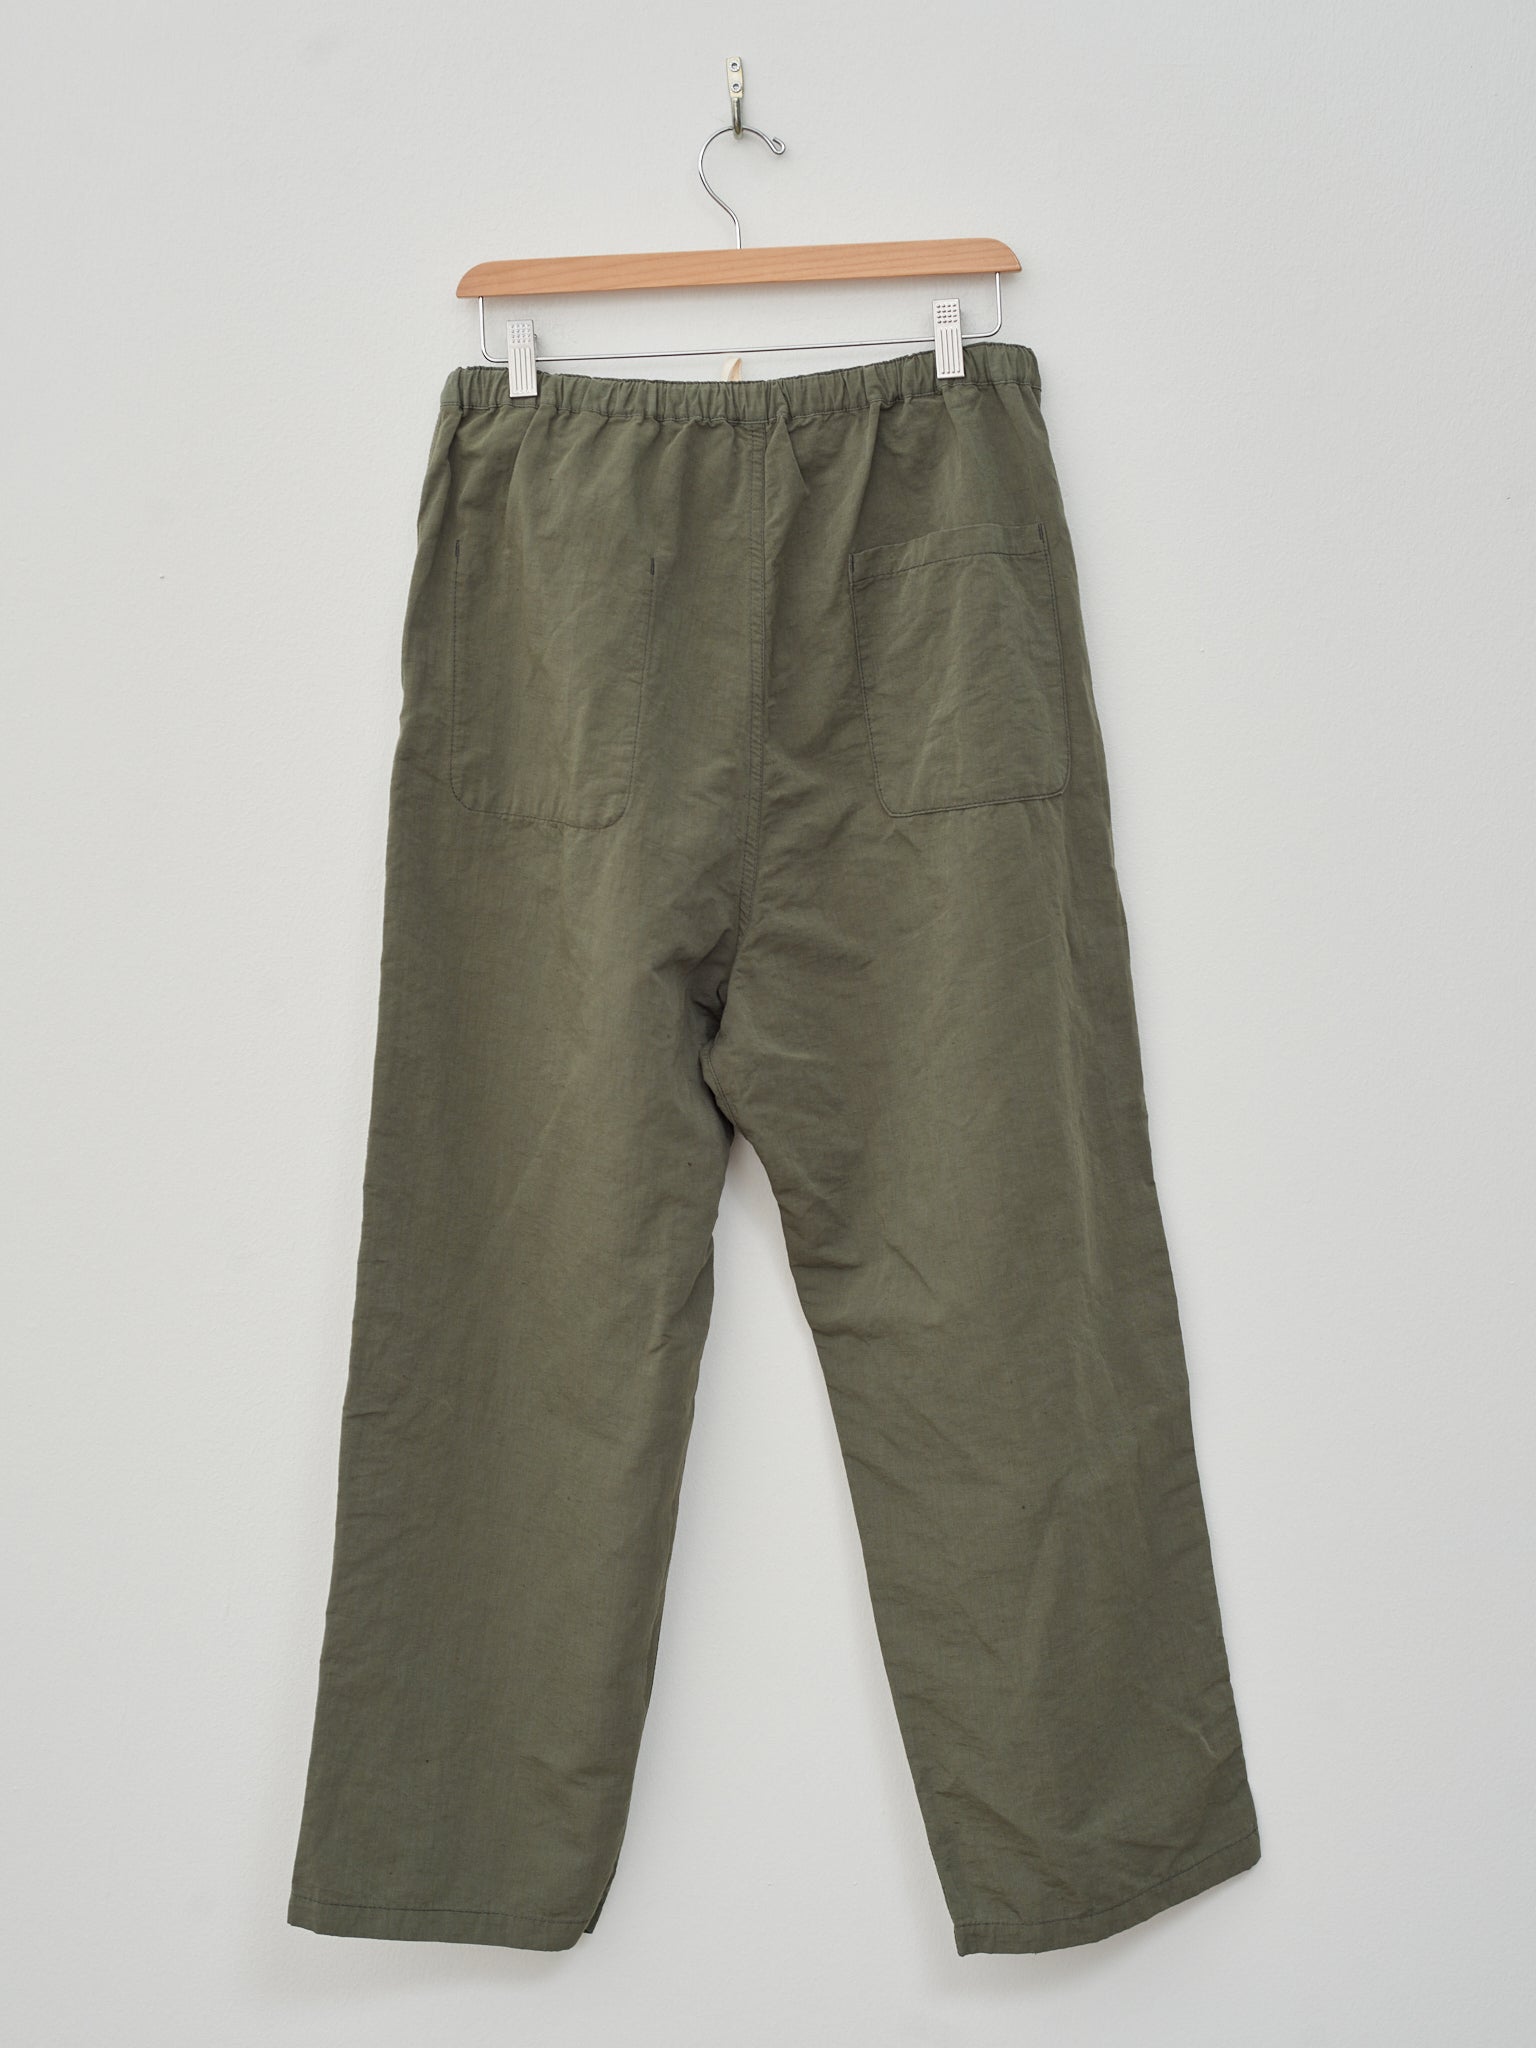 Namu Shop - Fujito Pajama Pants - Olive Green